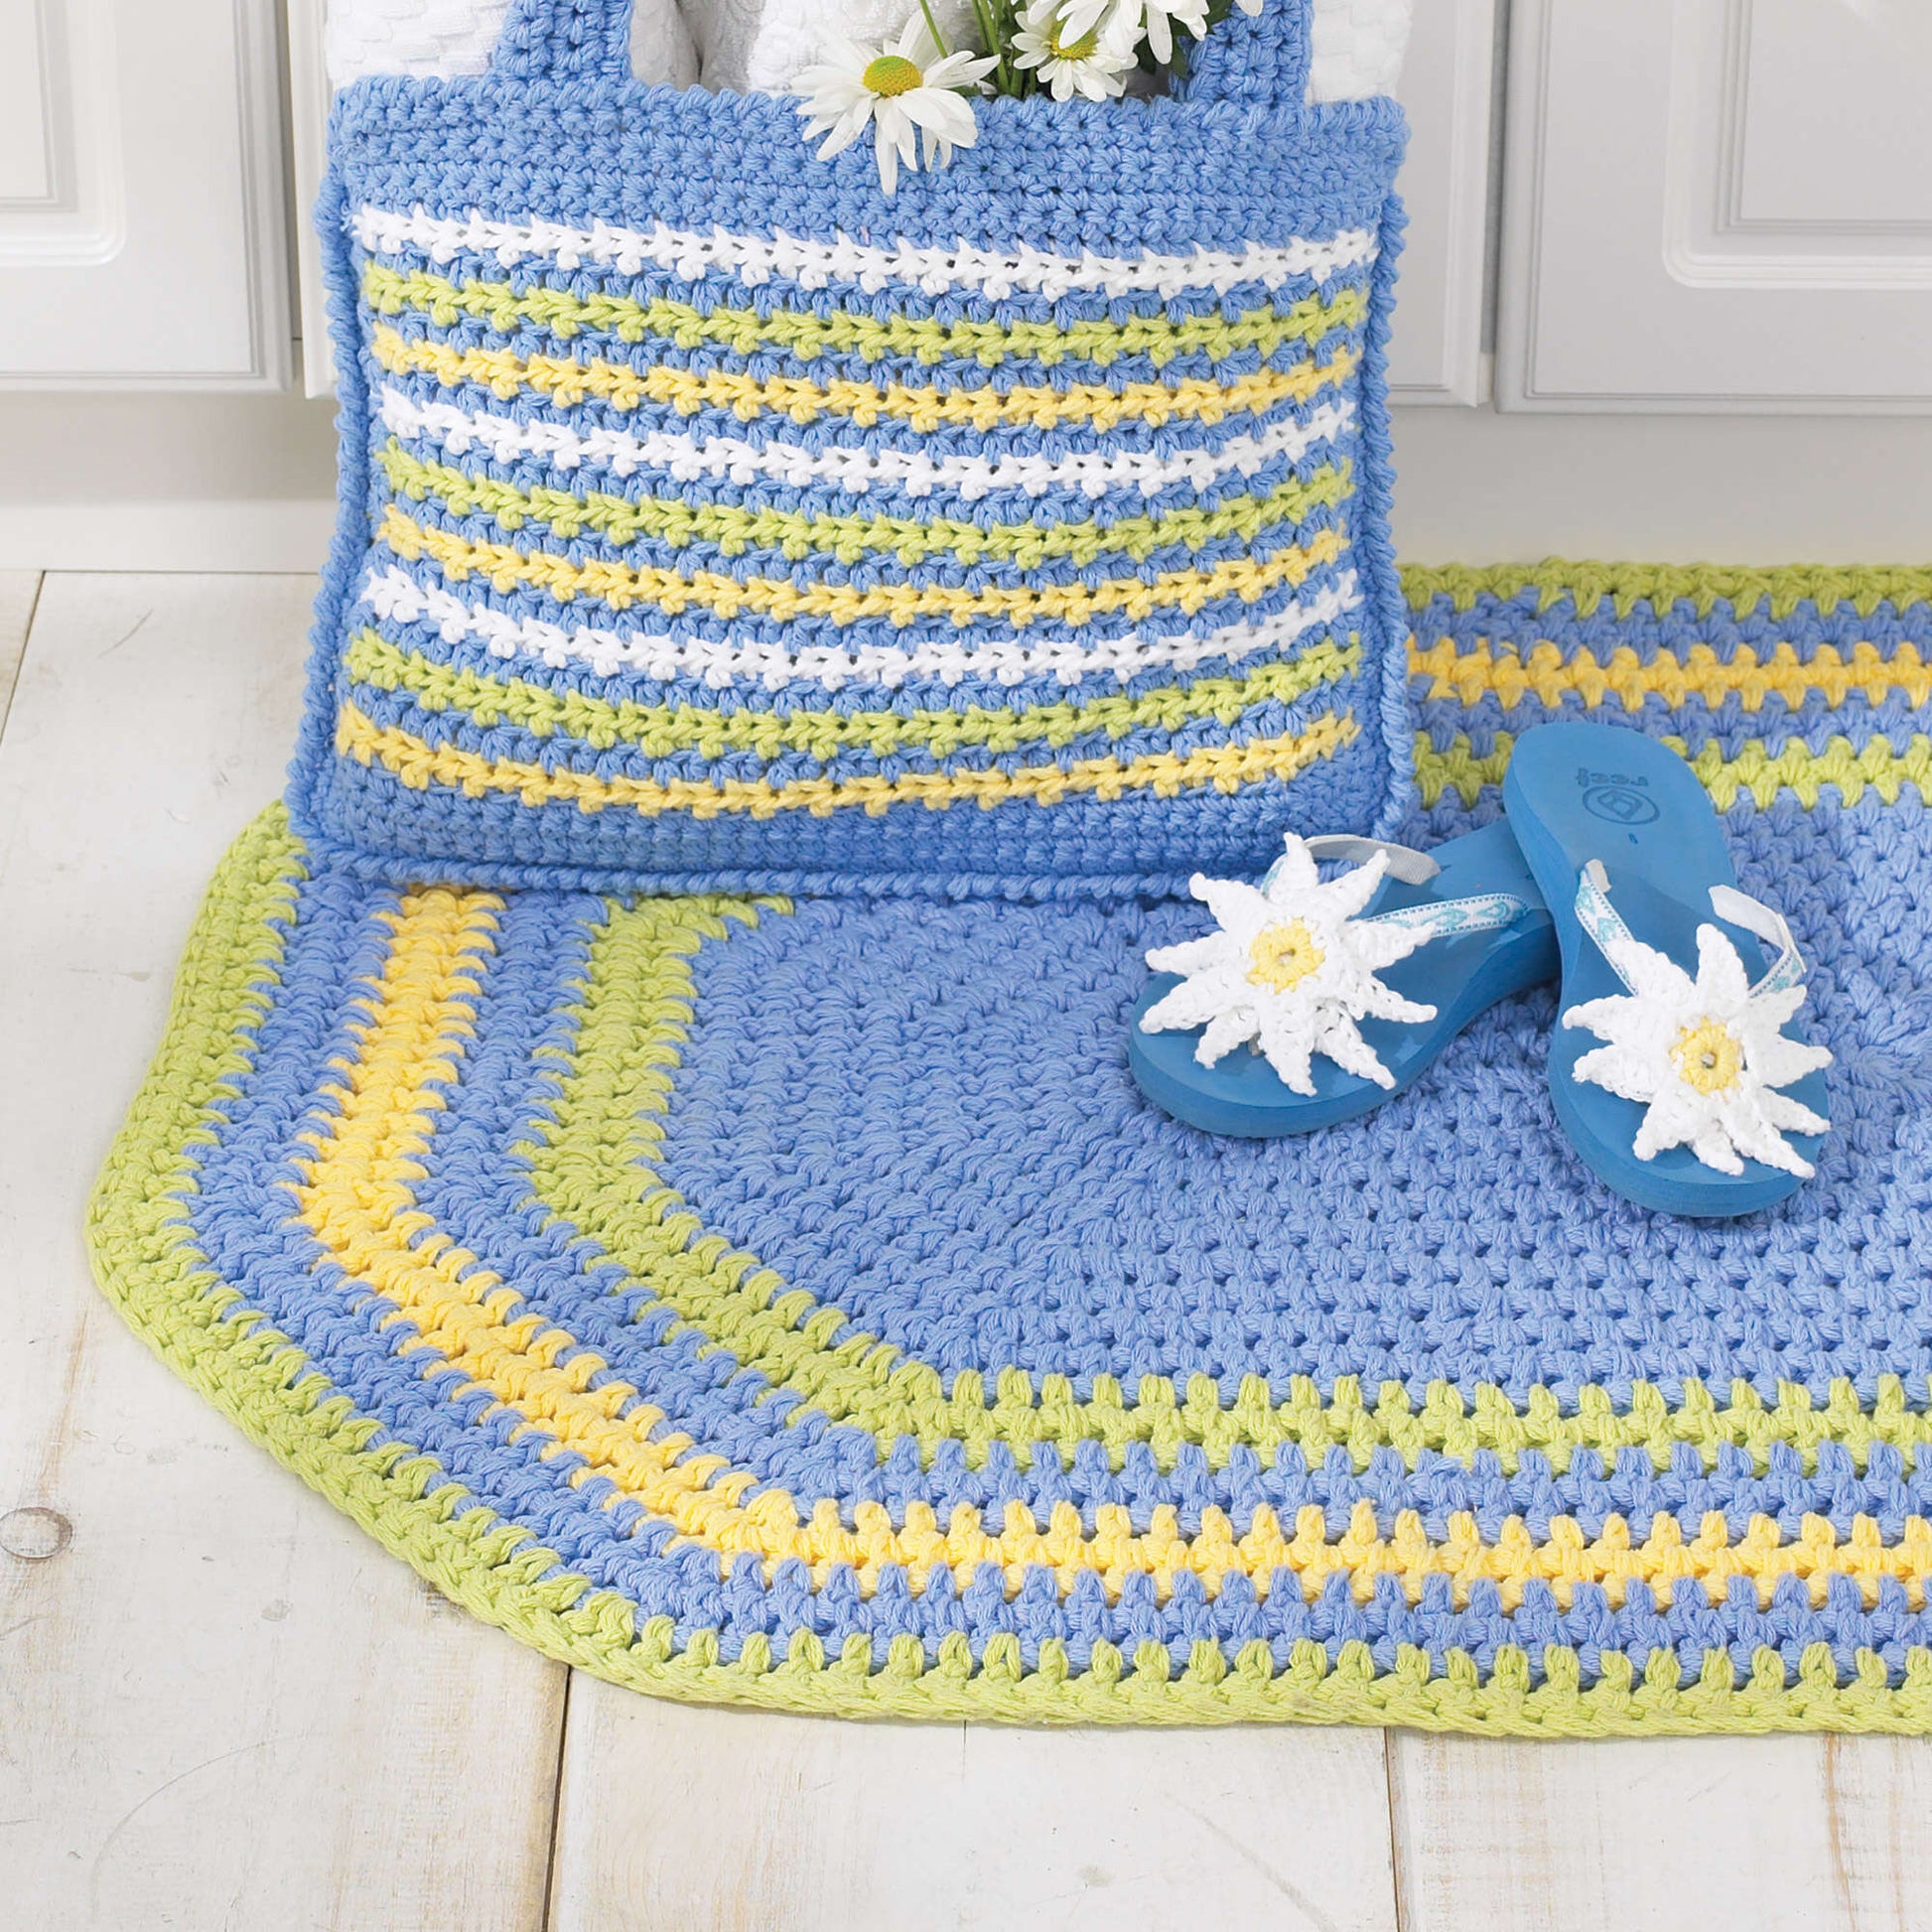 Free Lily Sugar'n Cream Oval Rug Crochet Pattern